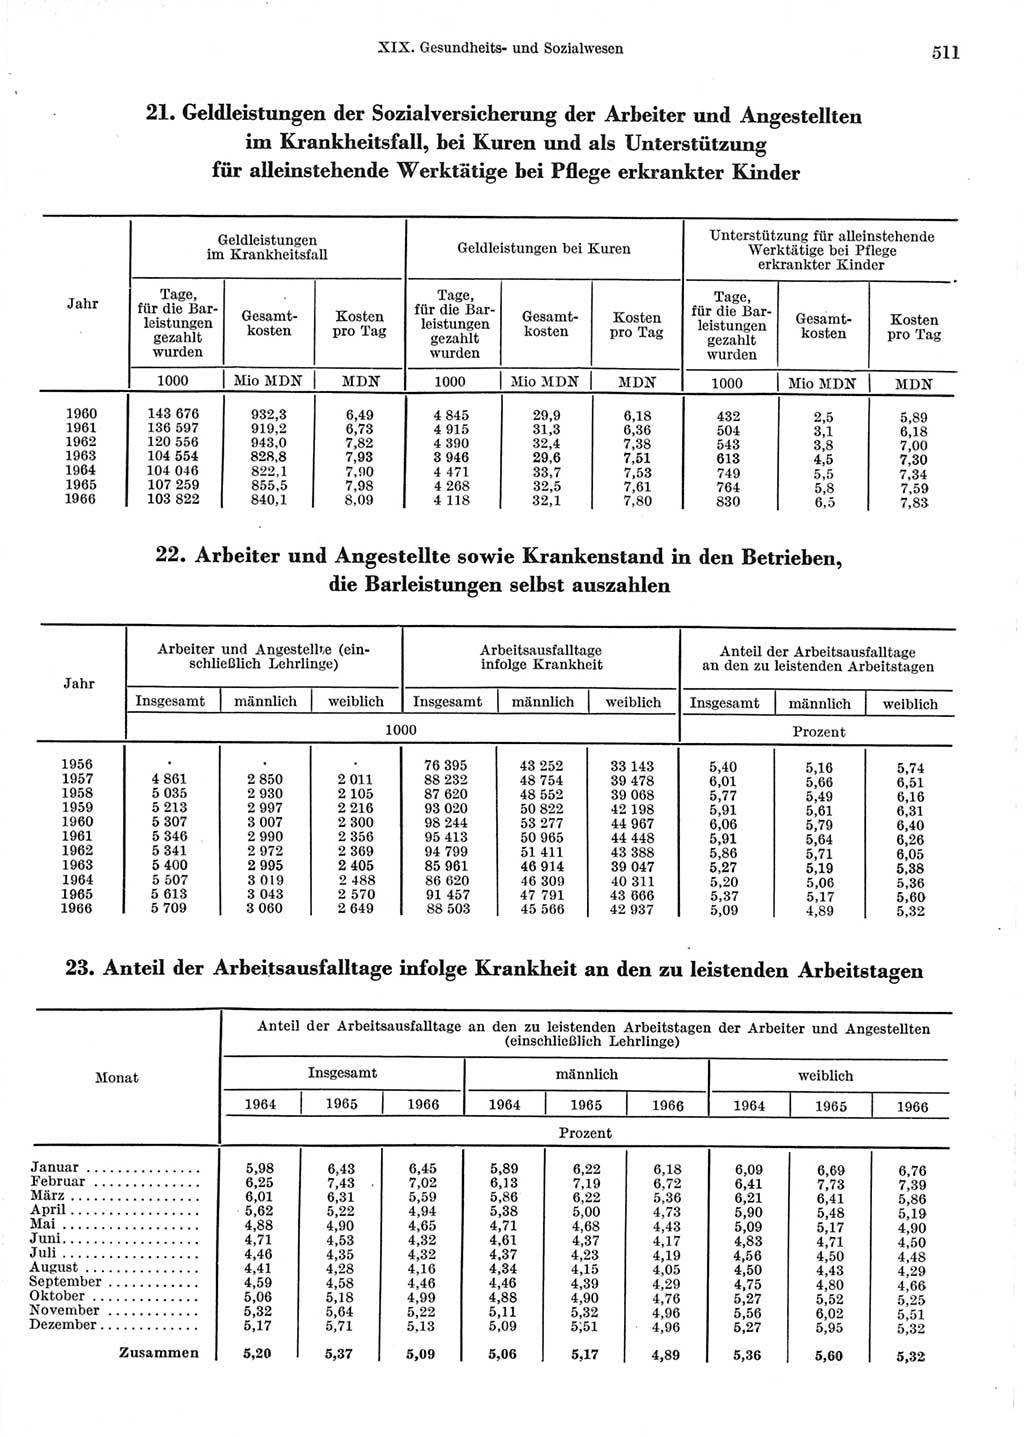 Statistisches Jahrbuch der Deutschen Demokratischen Republik (DDR) 1967, Seite 511 (Stat. Jb. DDR 1967, S. 511)